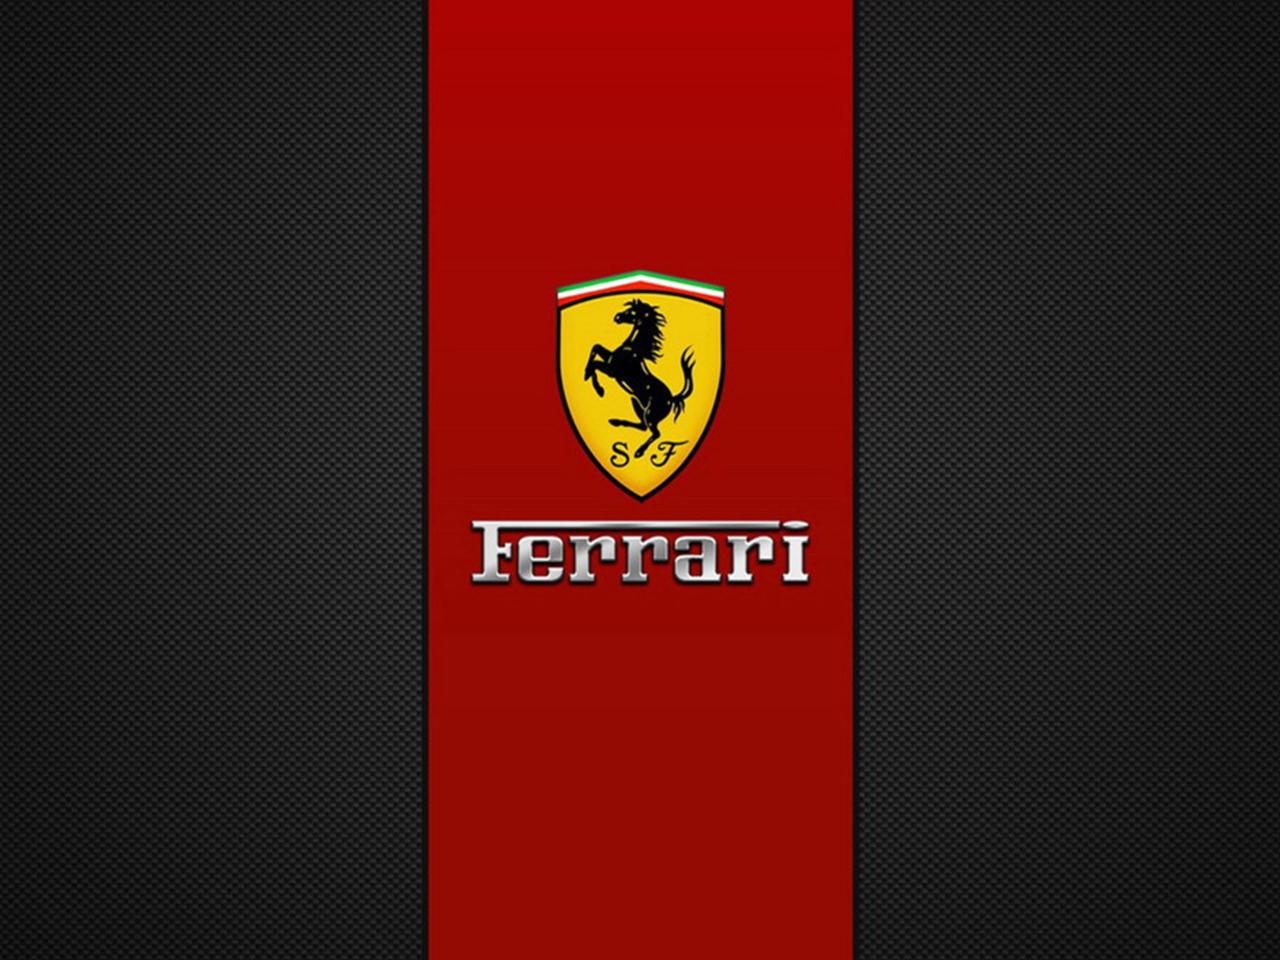 Ferrari Emblem wallpaper 1280x960